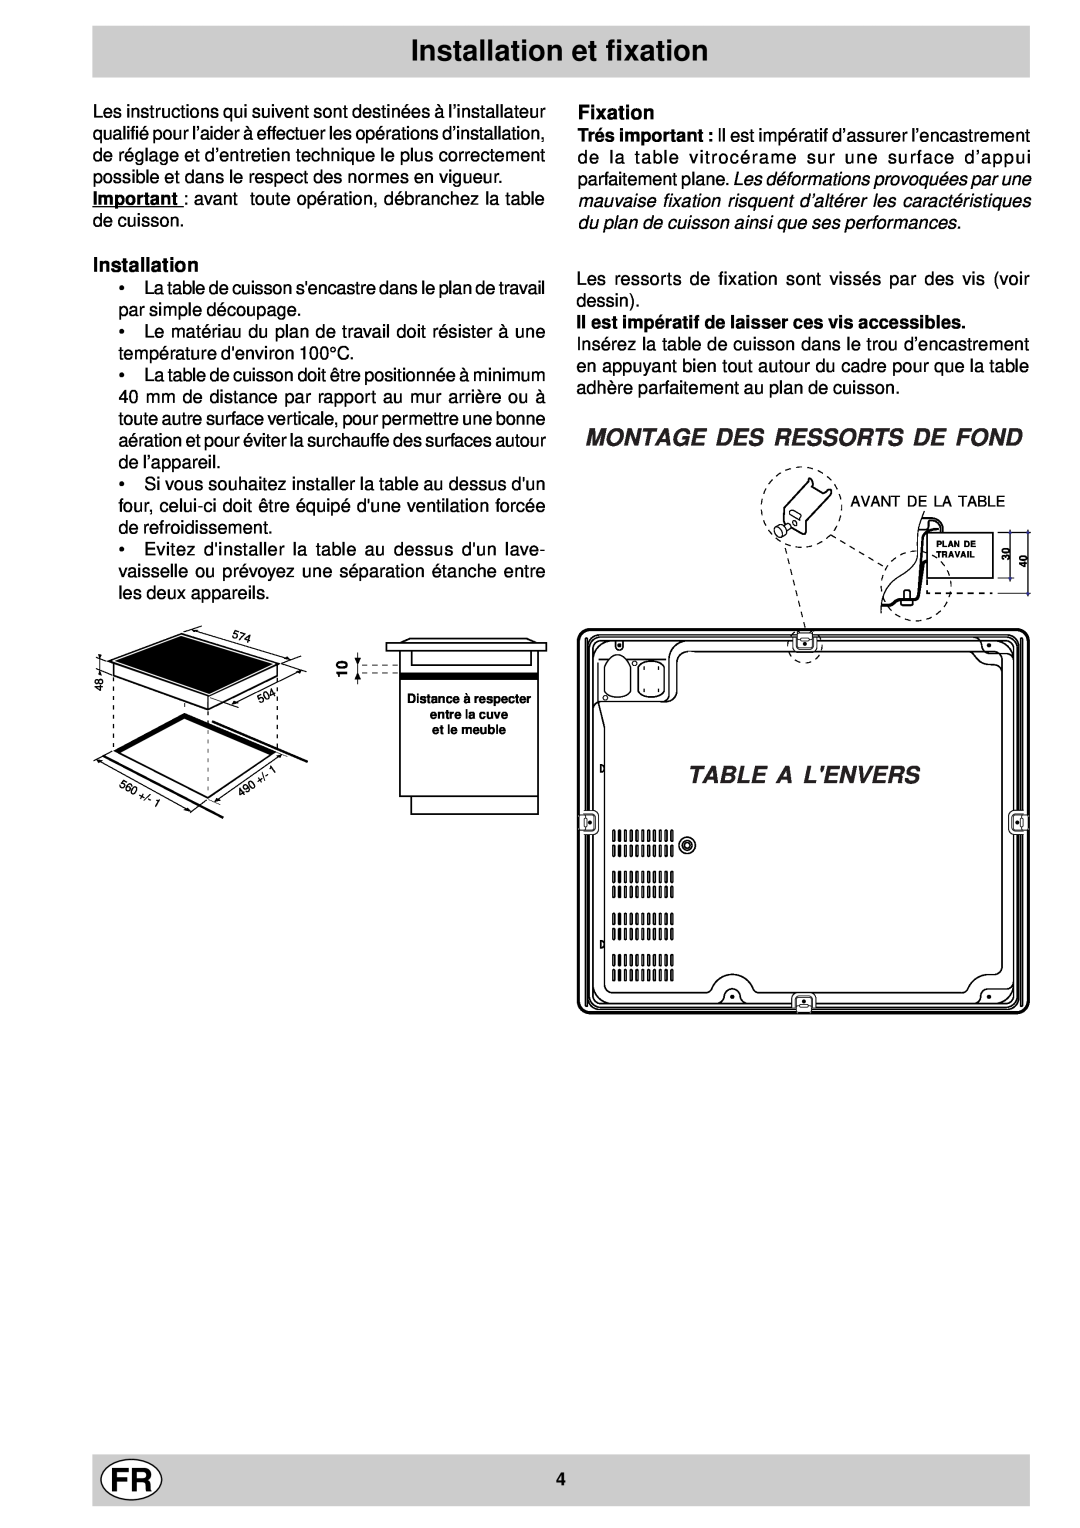 Indesit mk 64 r manual Installation et fixation, Montage Des Ressorts De Fond, Table A Lenvers, Fixation 